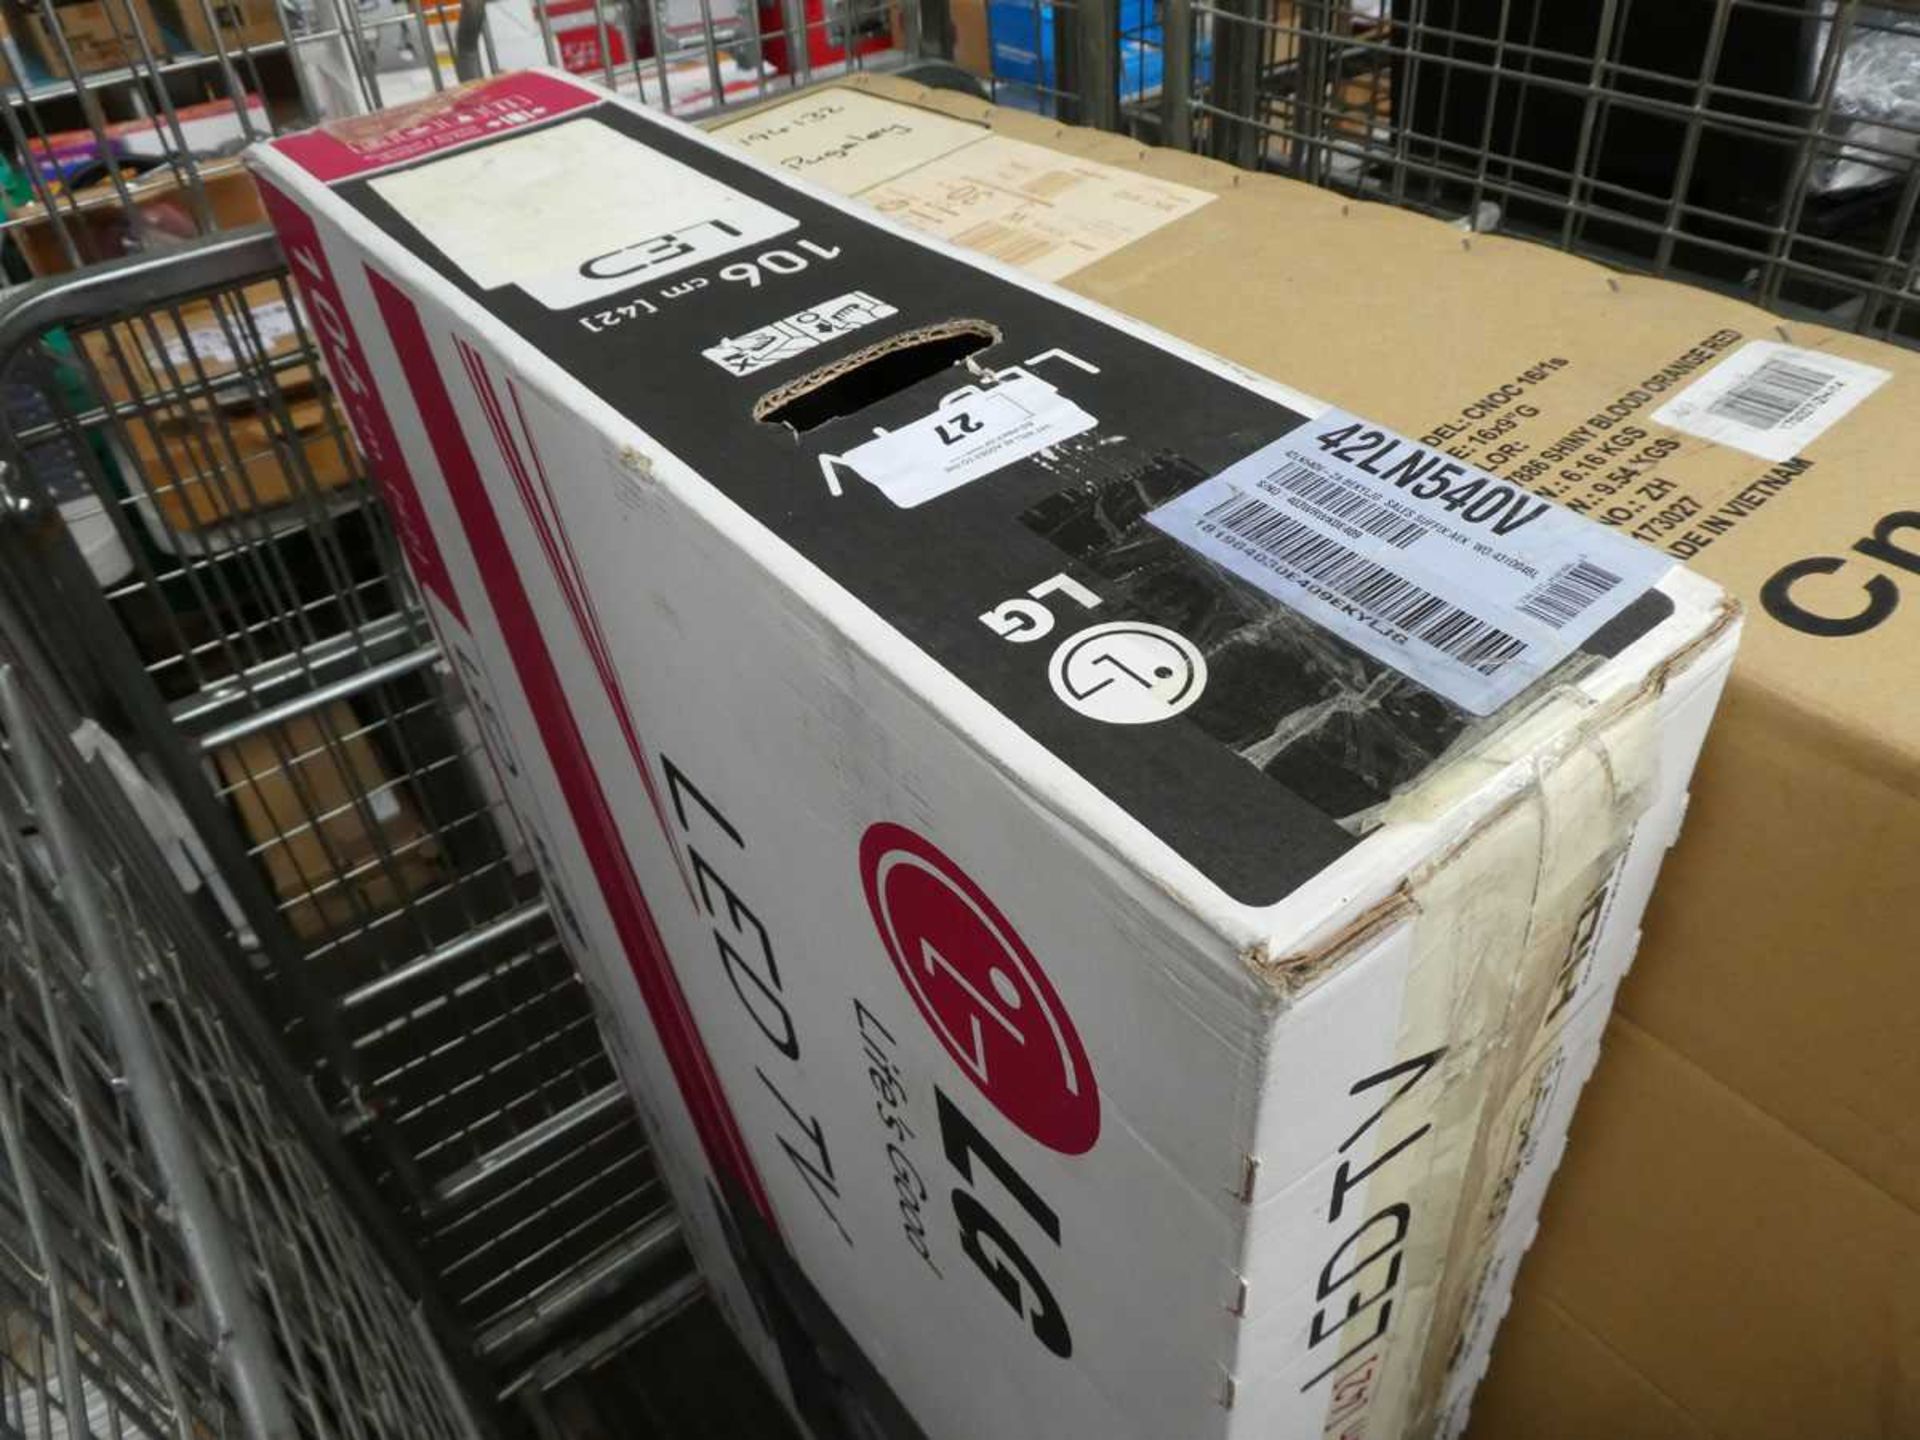 +VAT LG 42" LED TV with box, 42LN540V